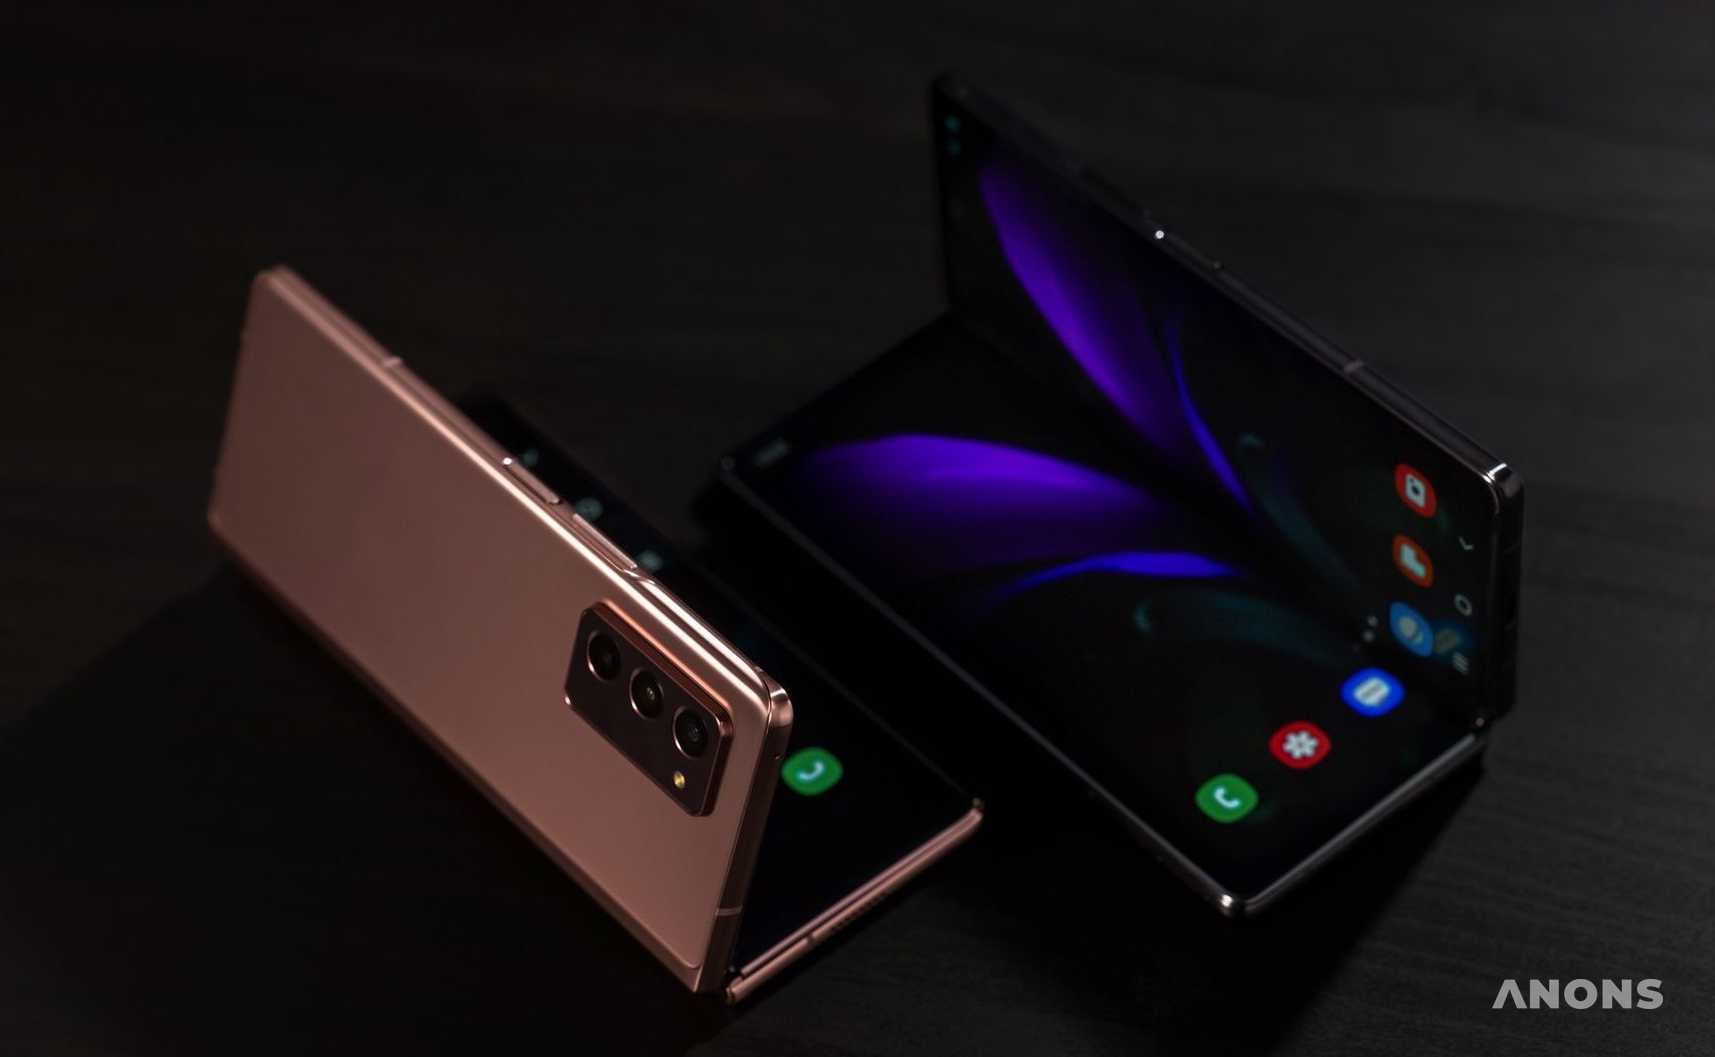 Samsung представила очередной складной смартфон Galaxy Z Fold 2